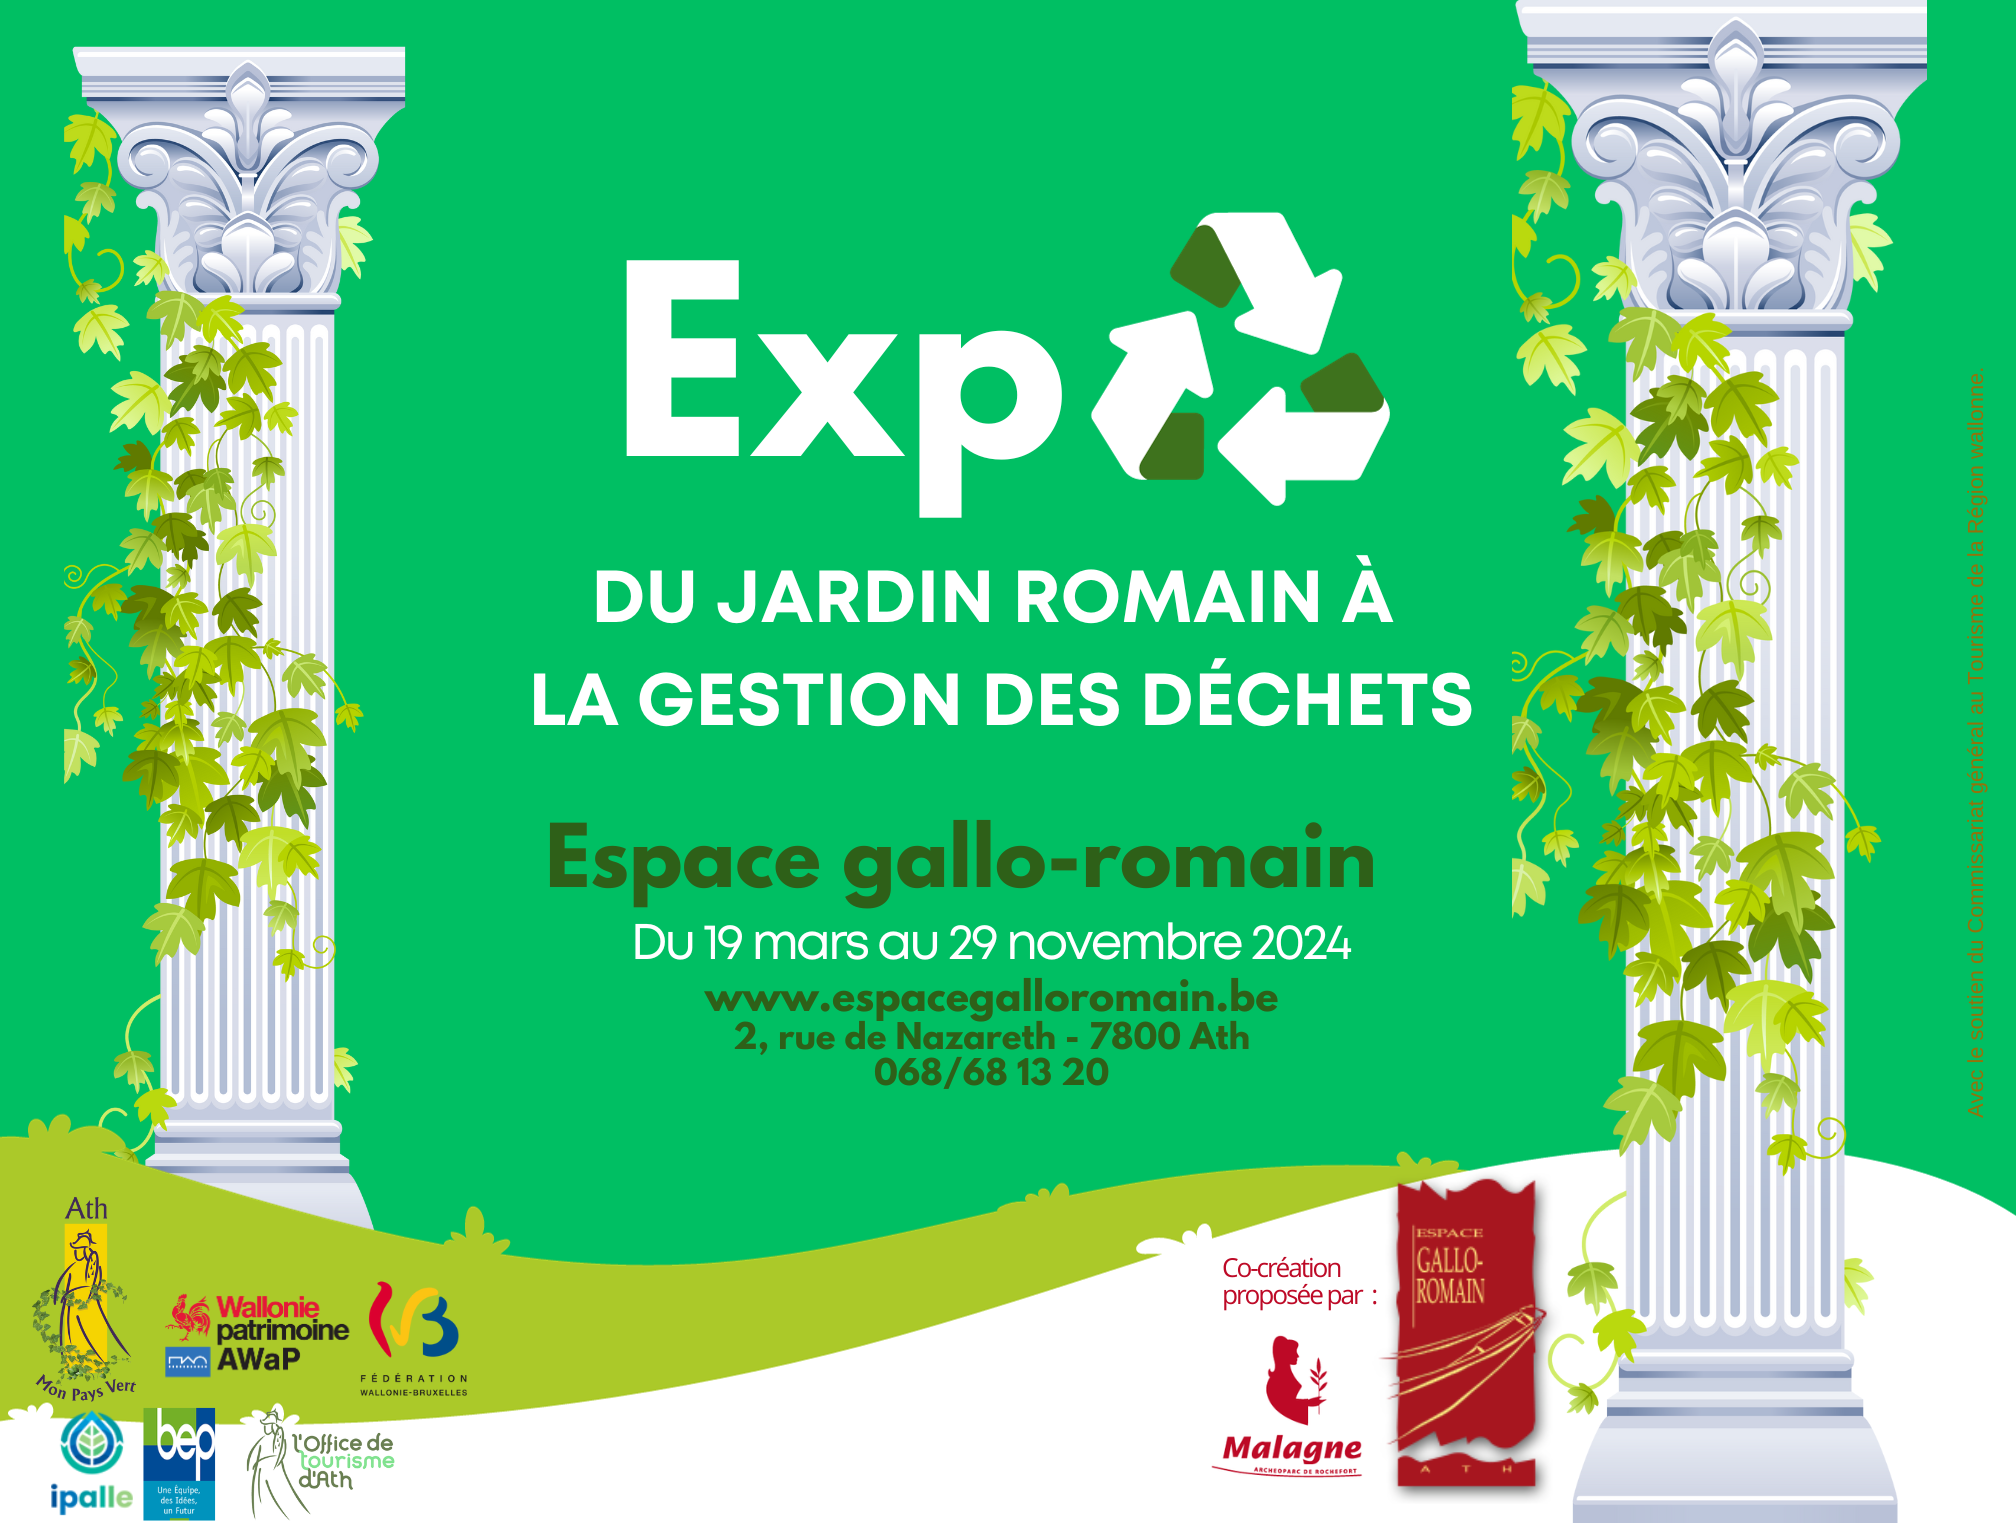 Expo du jardin romain gestion des déchets